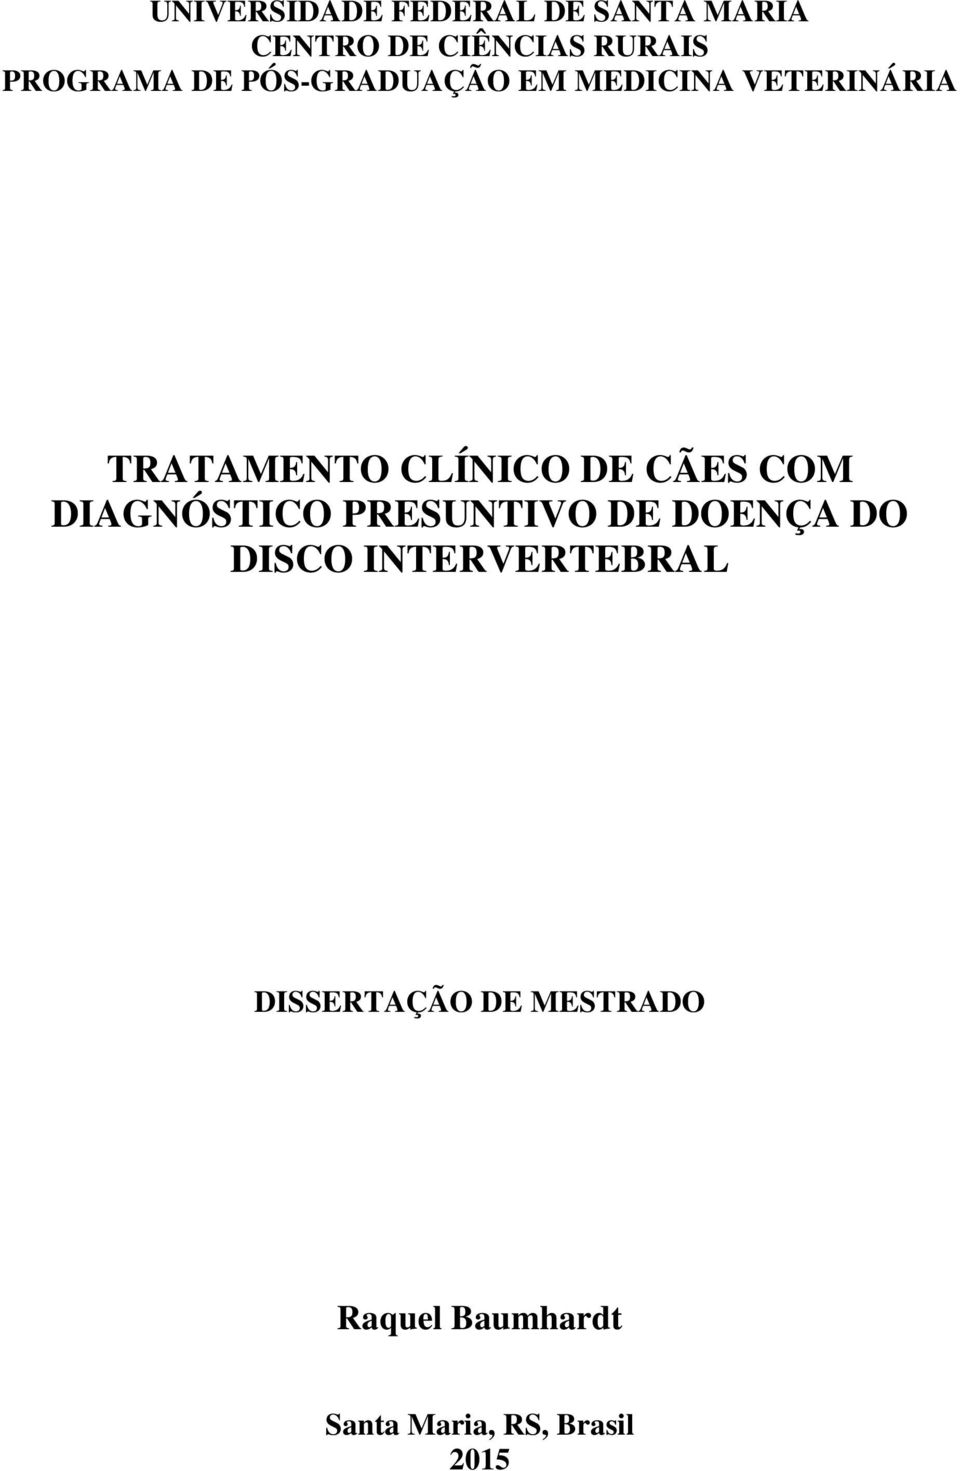 CLÍNICO DE CÃES COM DIAGNÓSTICO PRESUNTIVO DE DOENÇA DO DISCO